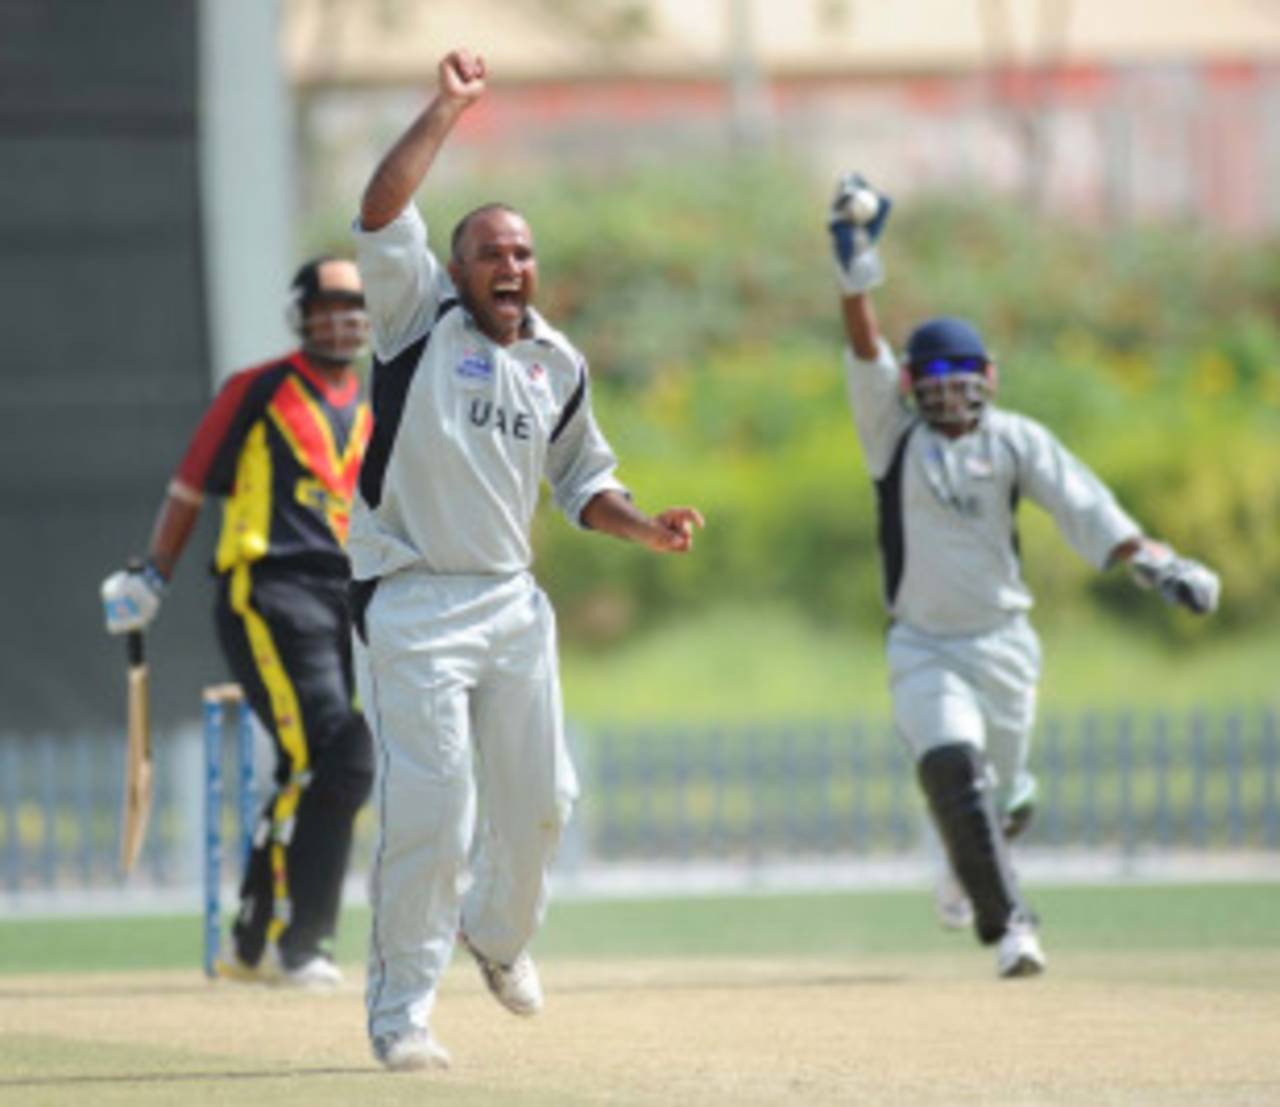 Arshad Ali makes a big appeal, UAE v Papa New Guinea, ICC World Cricket League Division 2, Dubai, April 9, 2011